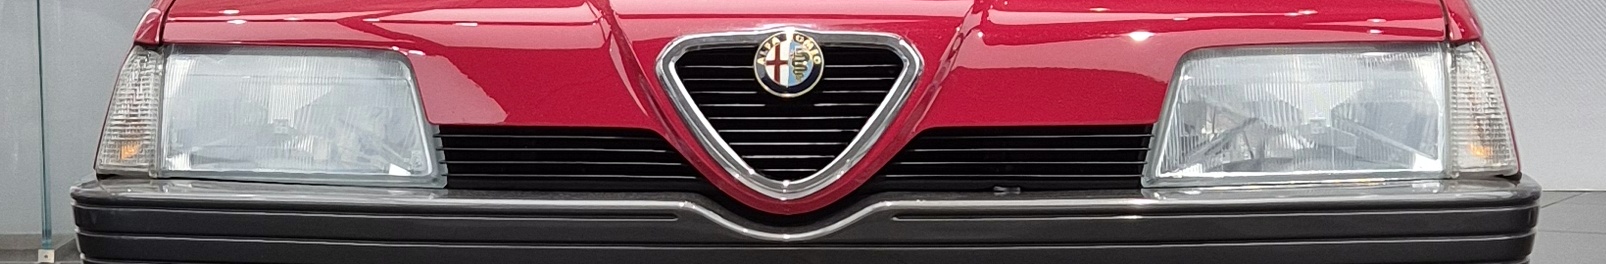 Alfaclub Alfa Romeo 164 Register